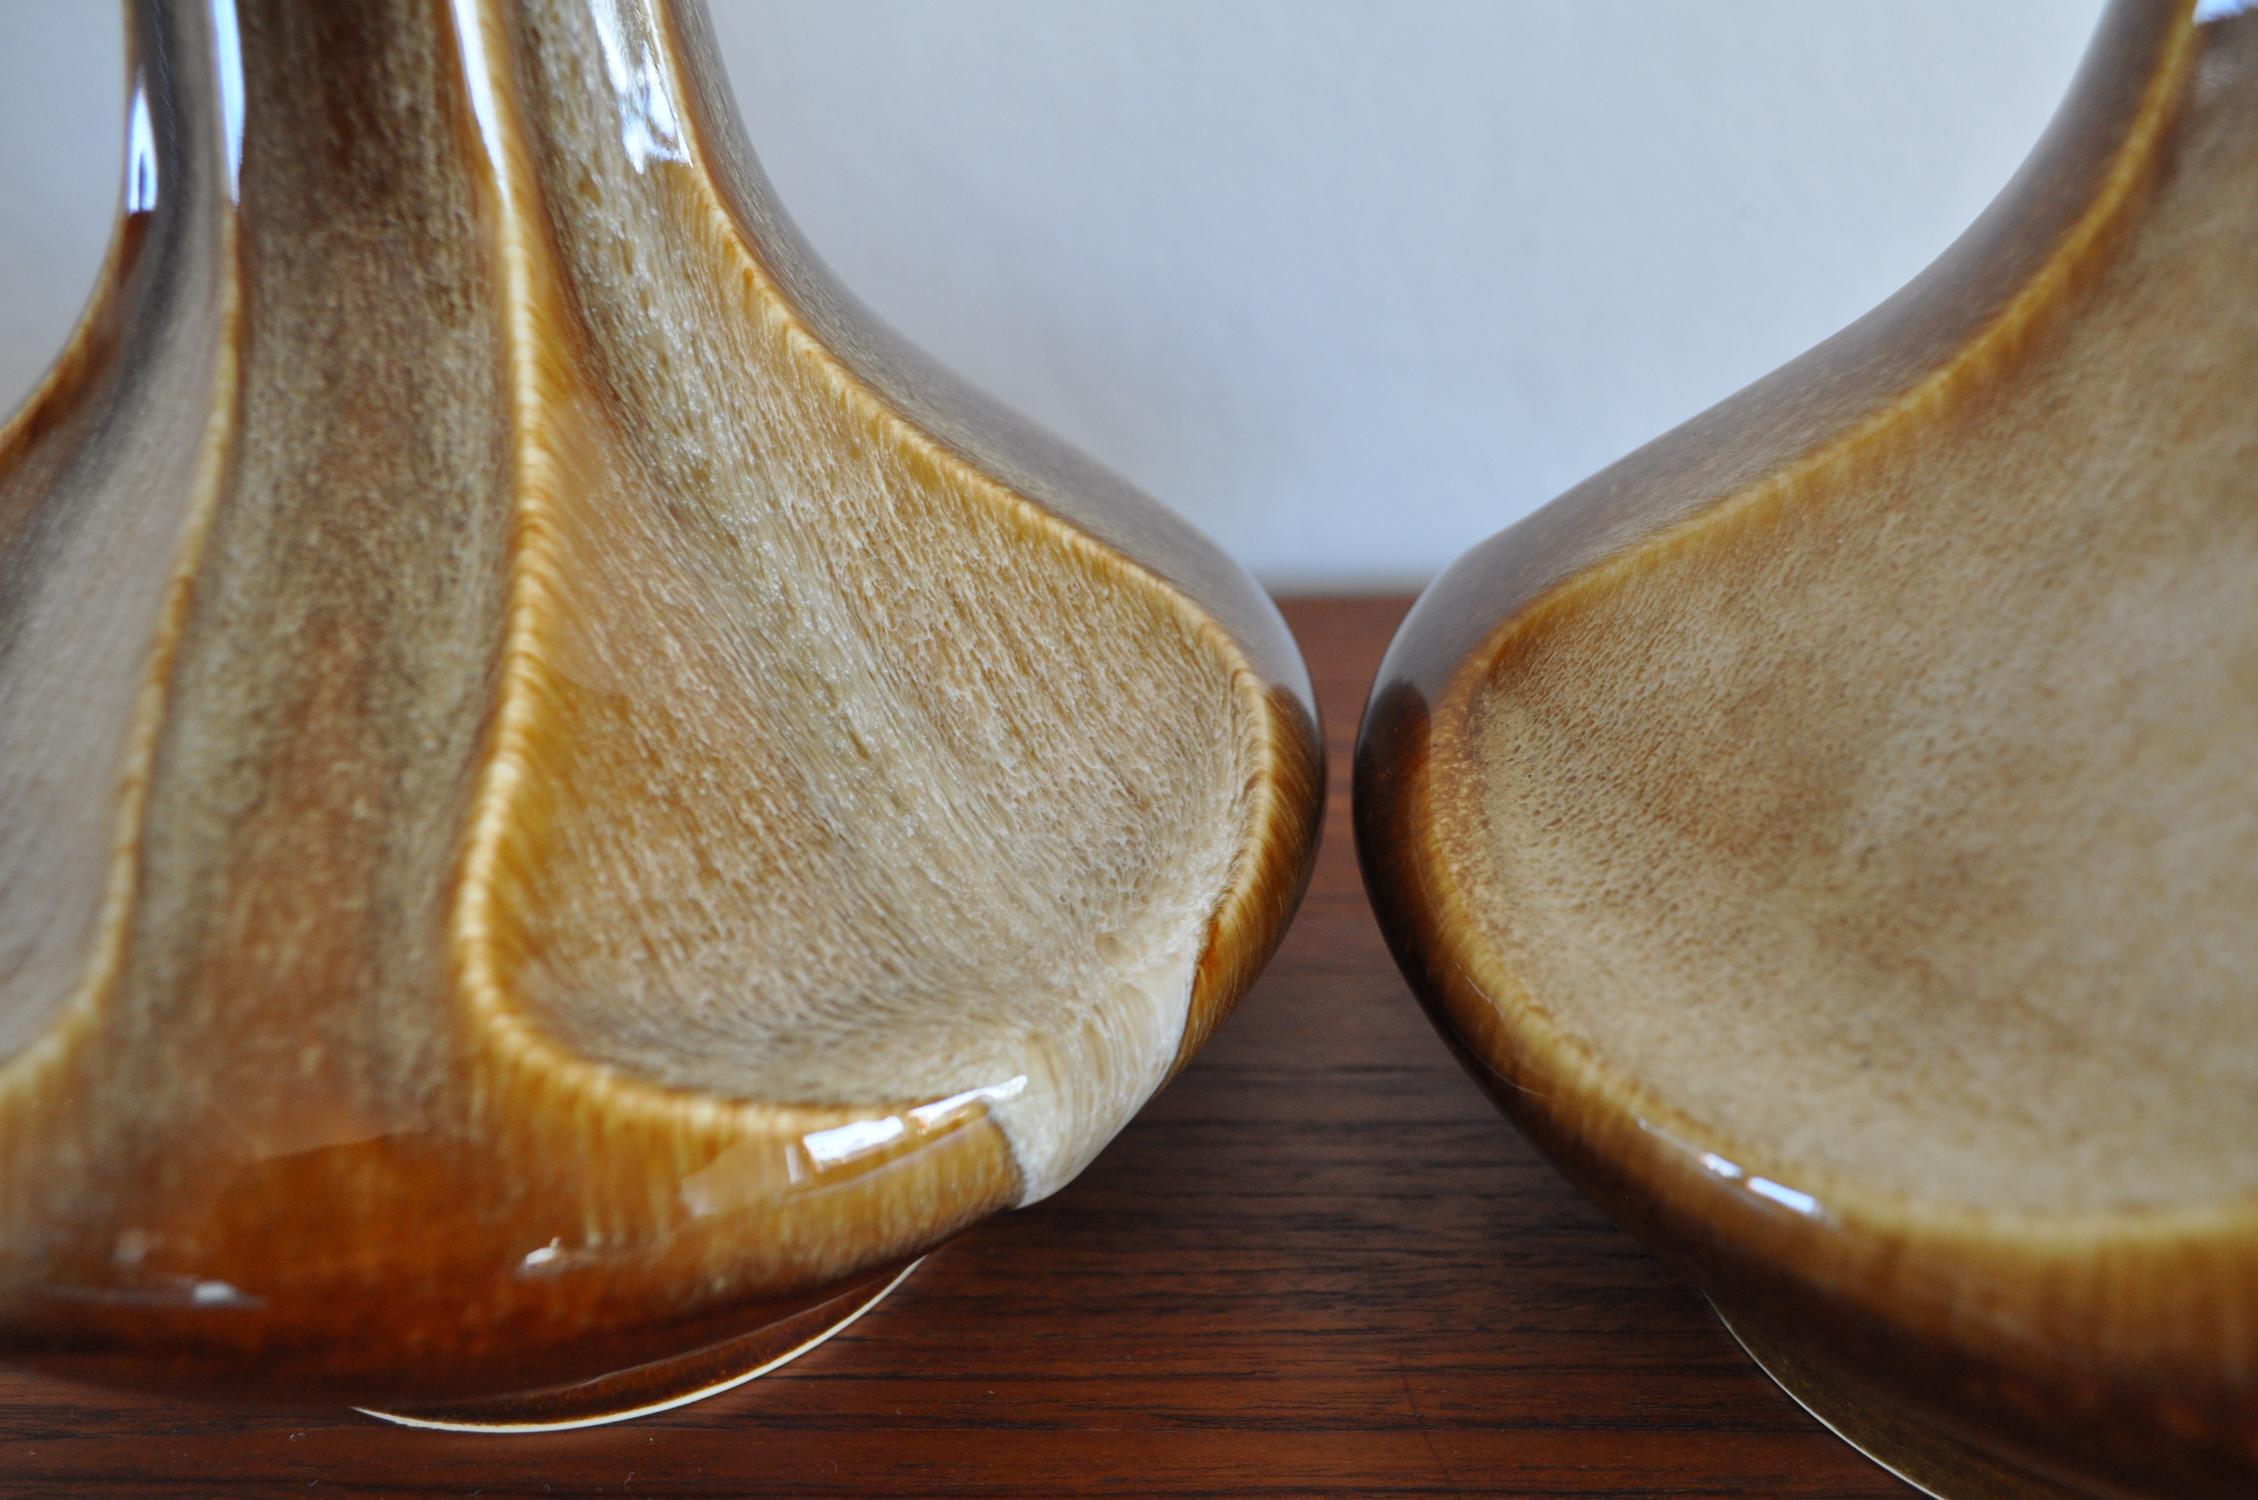 Danish Pair of Ceramic Table Lamps by Einar Johansen for Søholm, Denmark